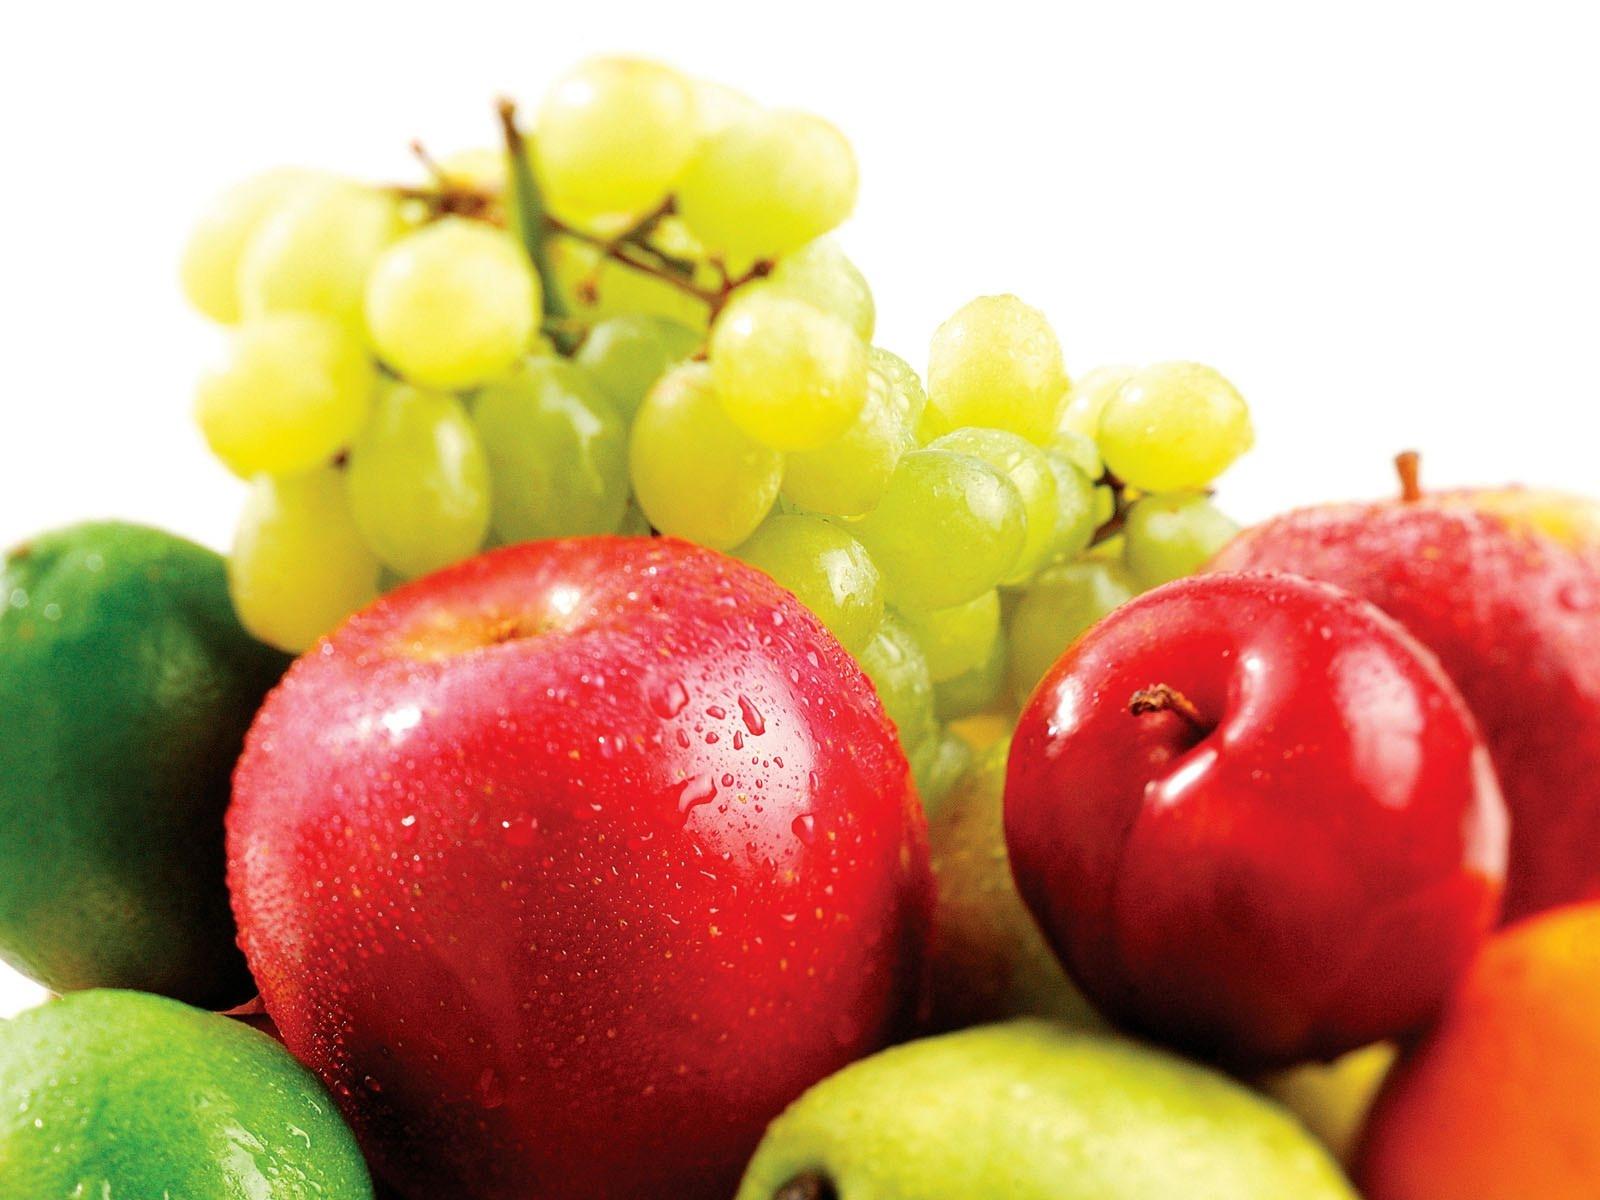 التفاح والعنب في المنام